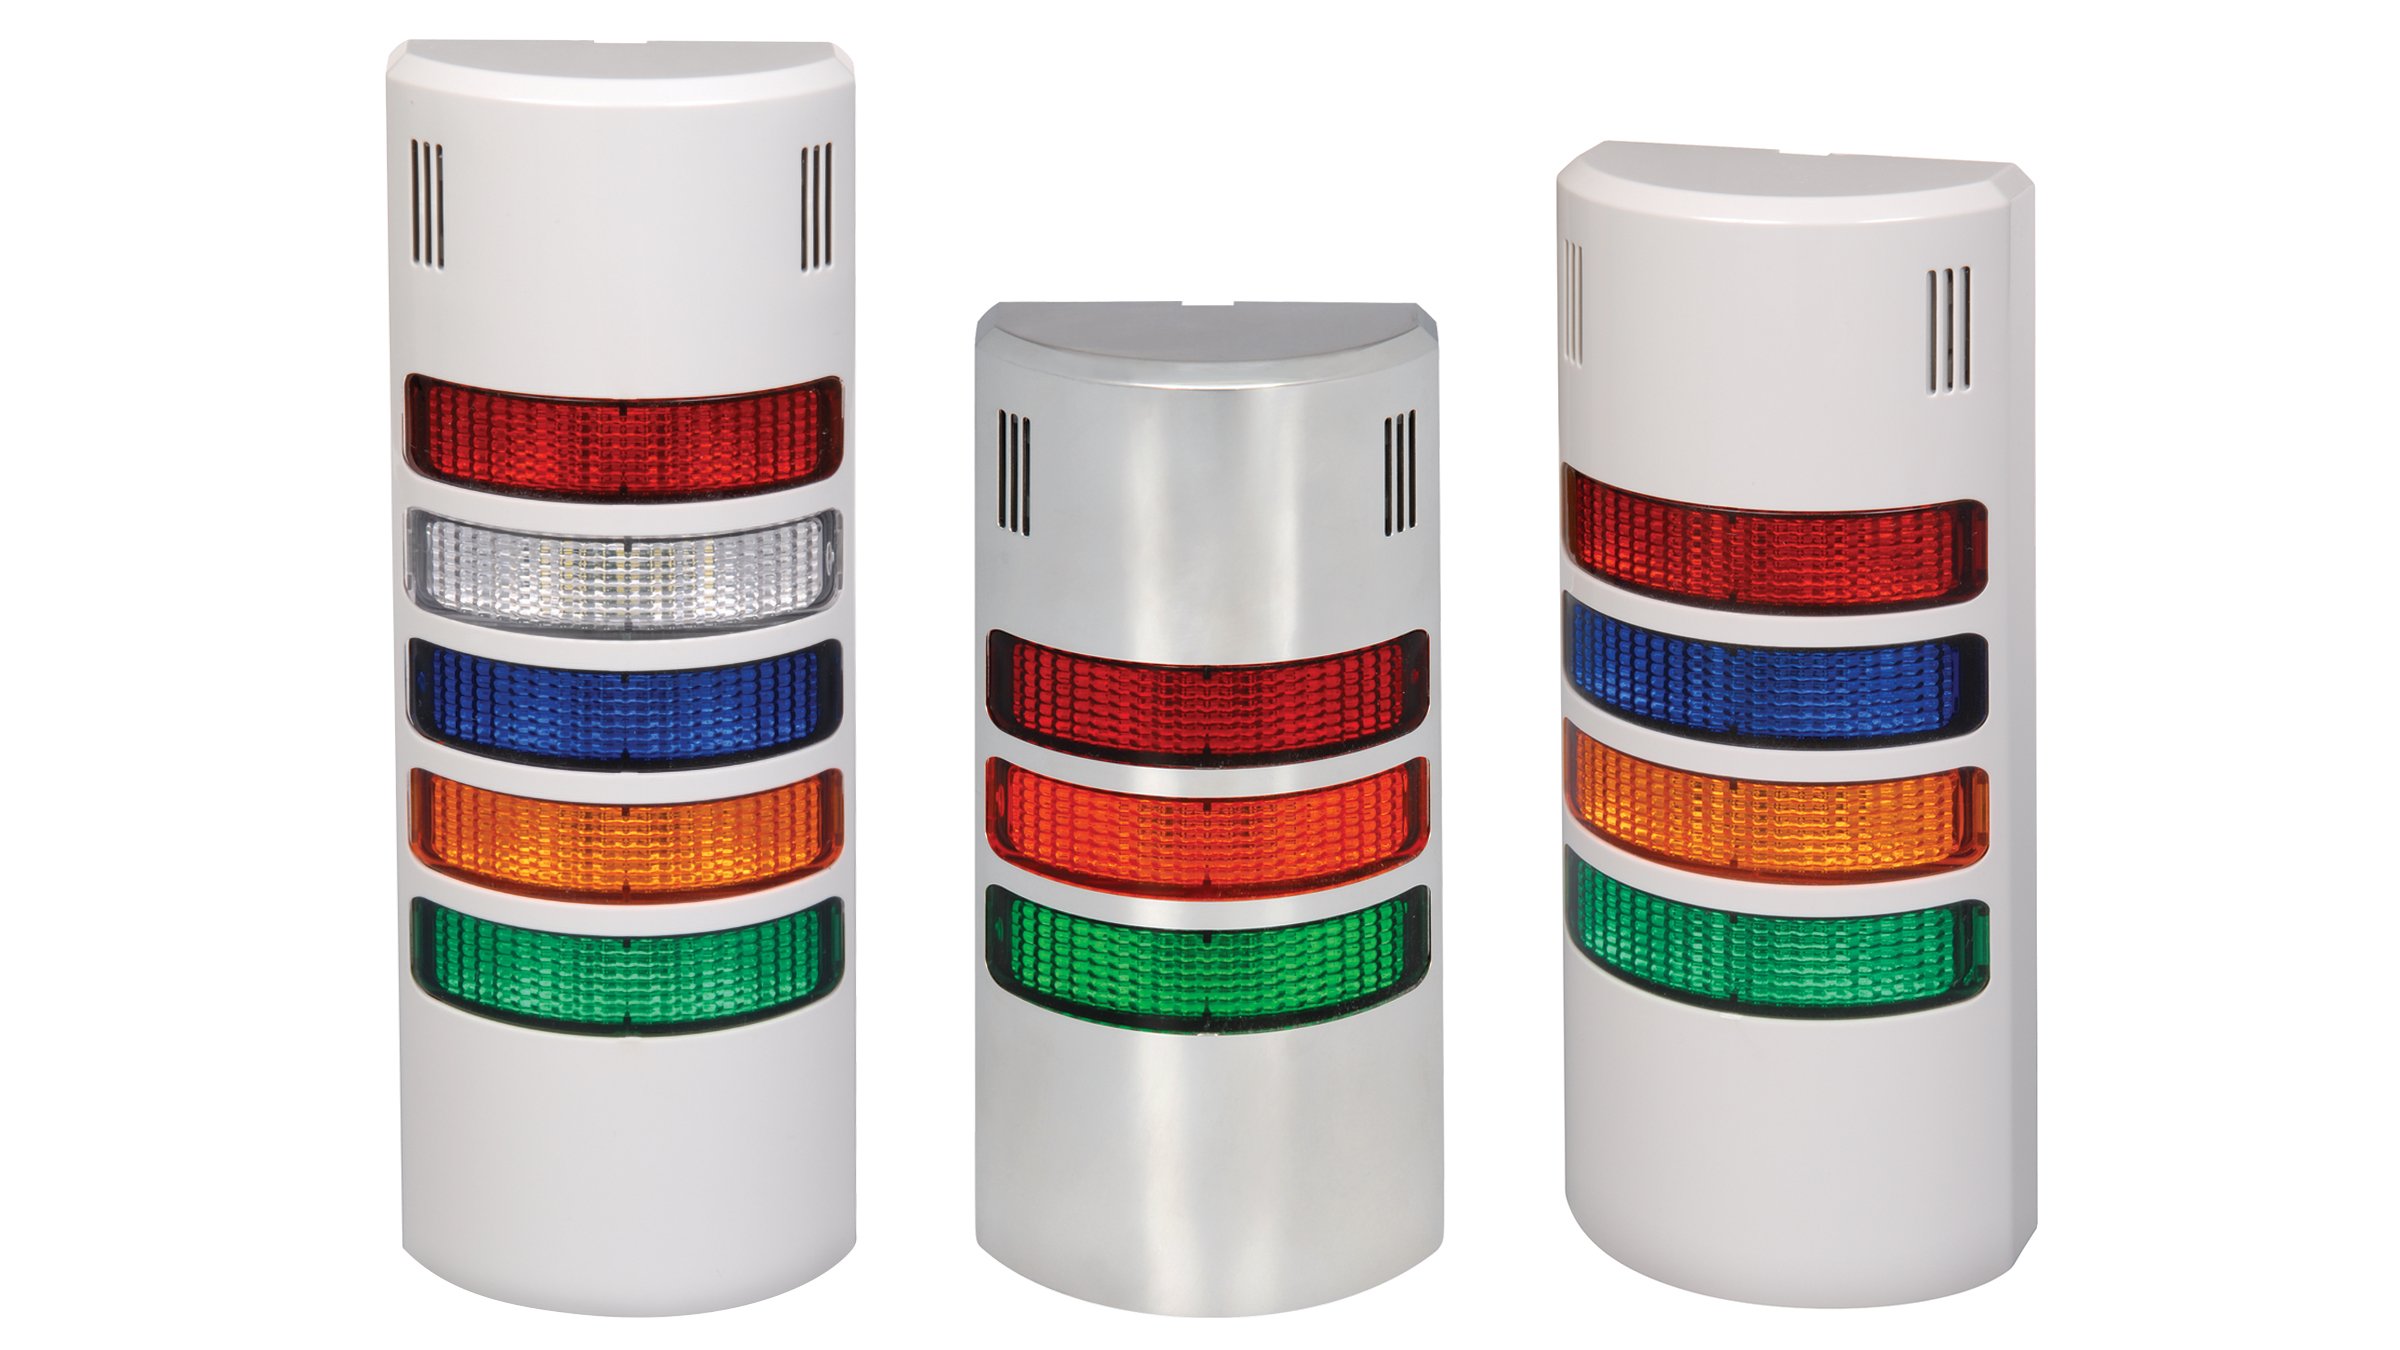 trois versions des lampes de signalisation murales 855 : une avec des voyants rouges/blancs/orange/verts, une avec des voyants rouges/orange/verts, une avec des voyants rouge/bleu/orange/vert